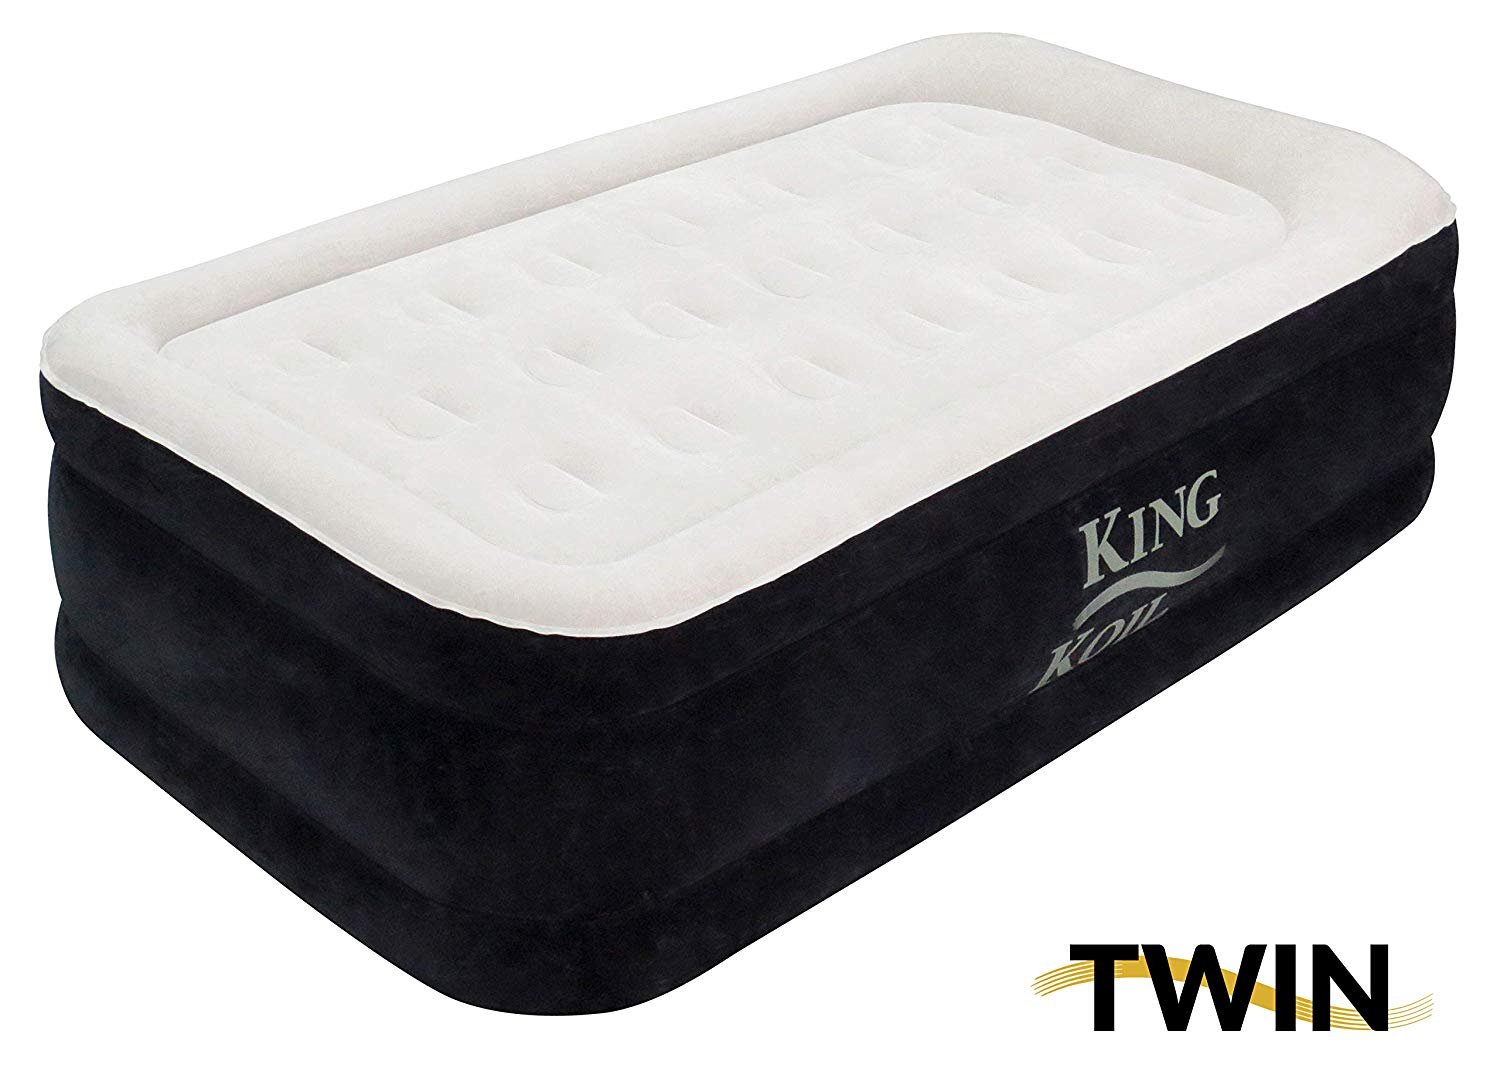 4 inch queen air mattress